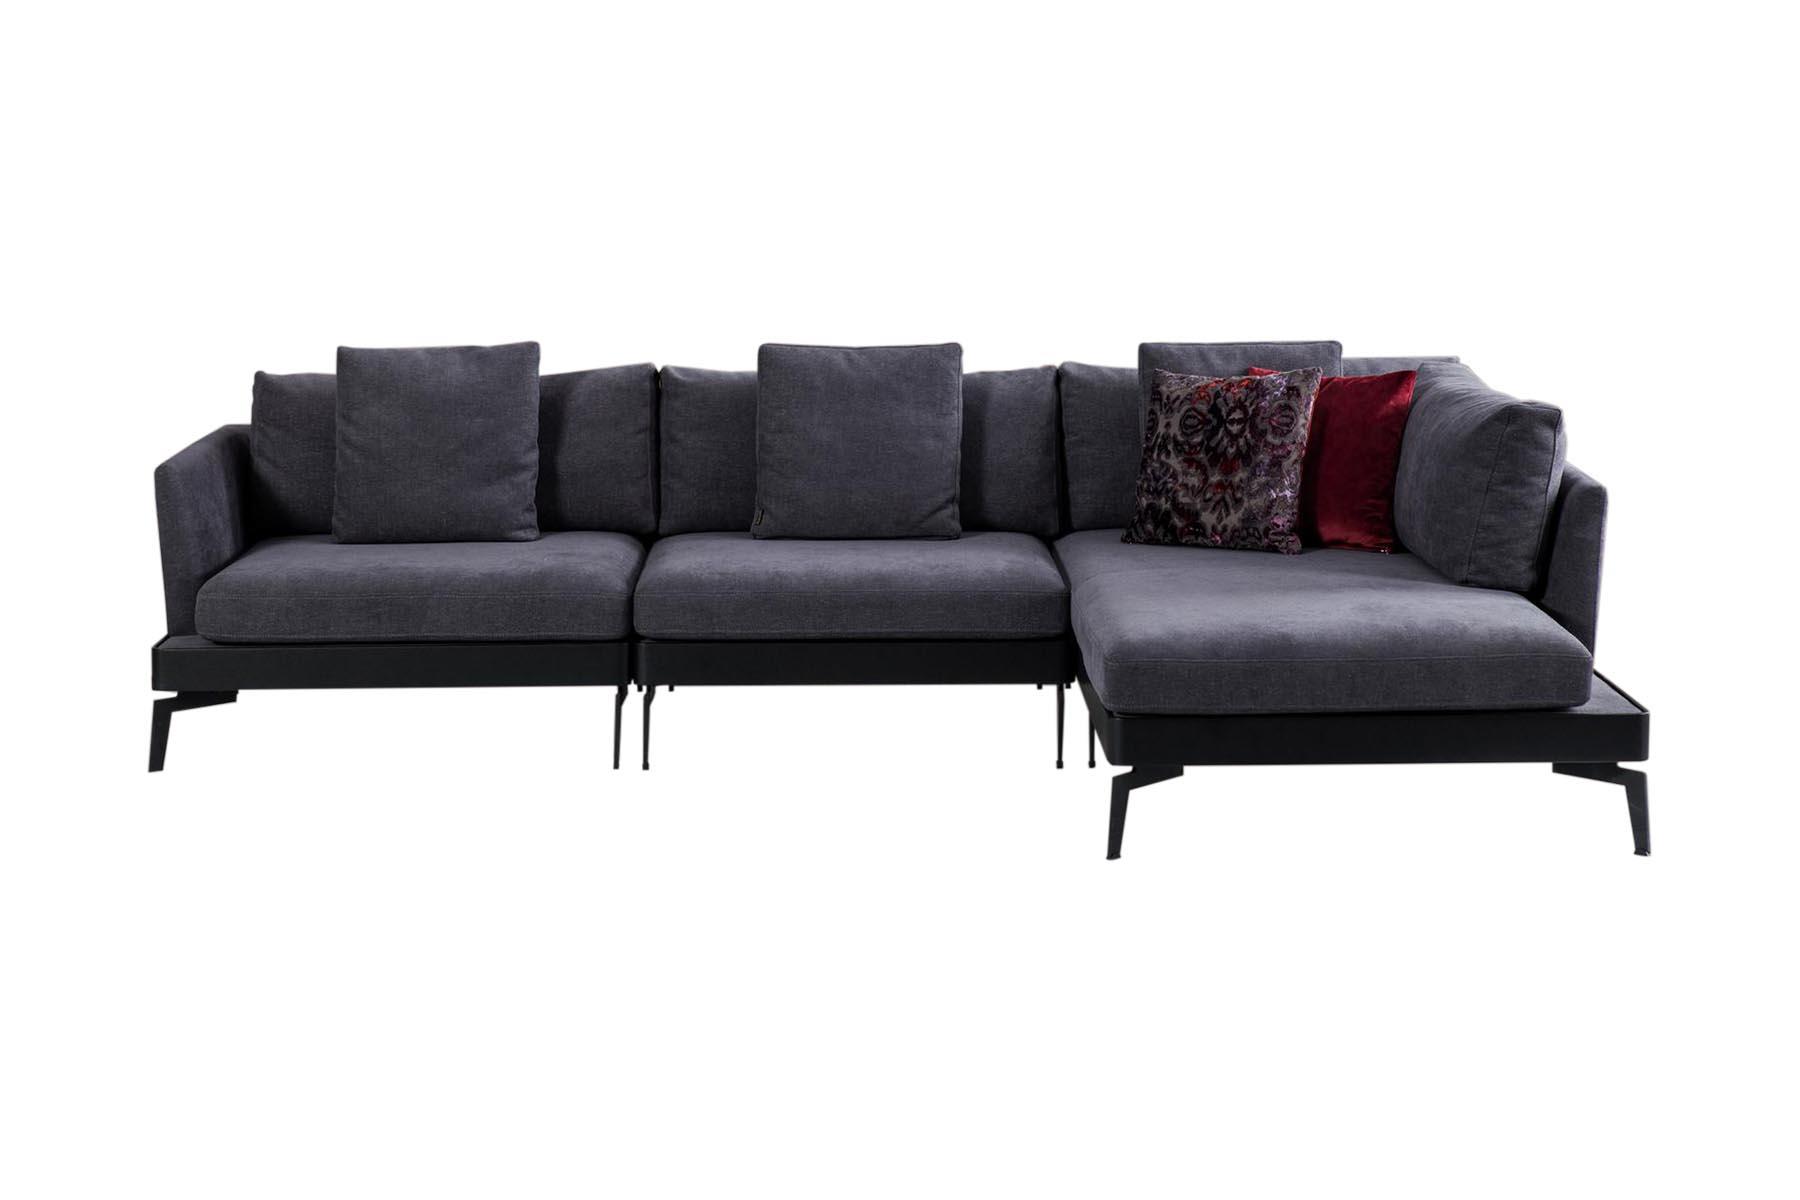 Jedna od najmodernijih sofa iz Inside asortimana. Njene tanke stranice upotpunjuju njen elegantni izgled. Uklapa se u više stilova uređenja.